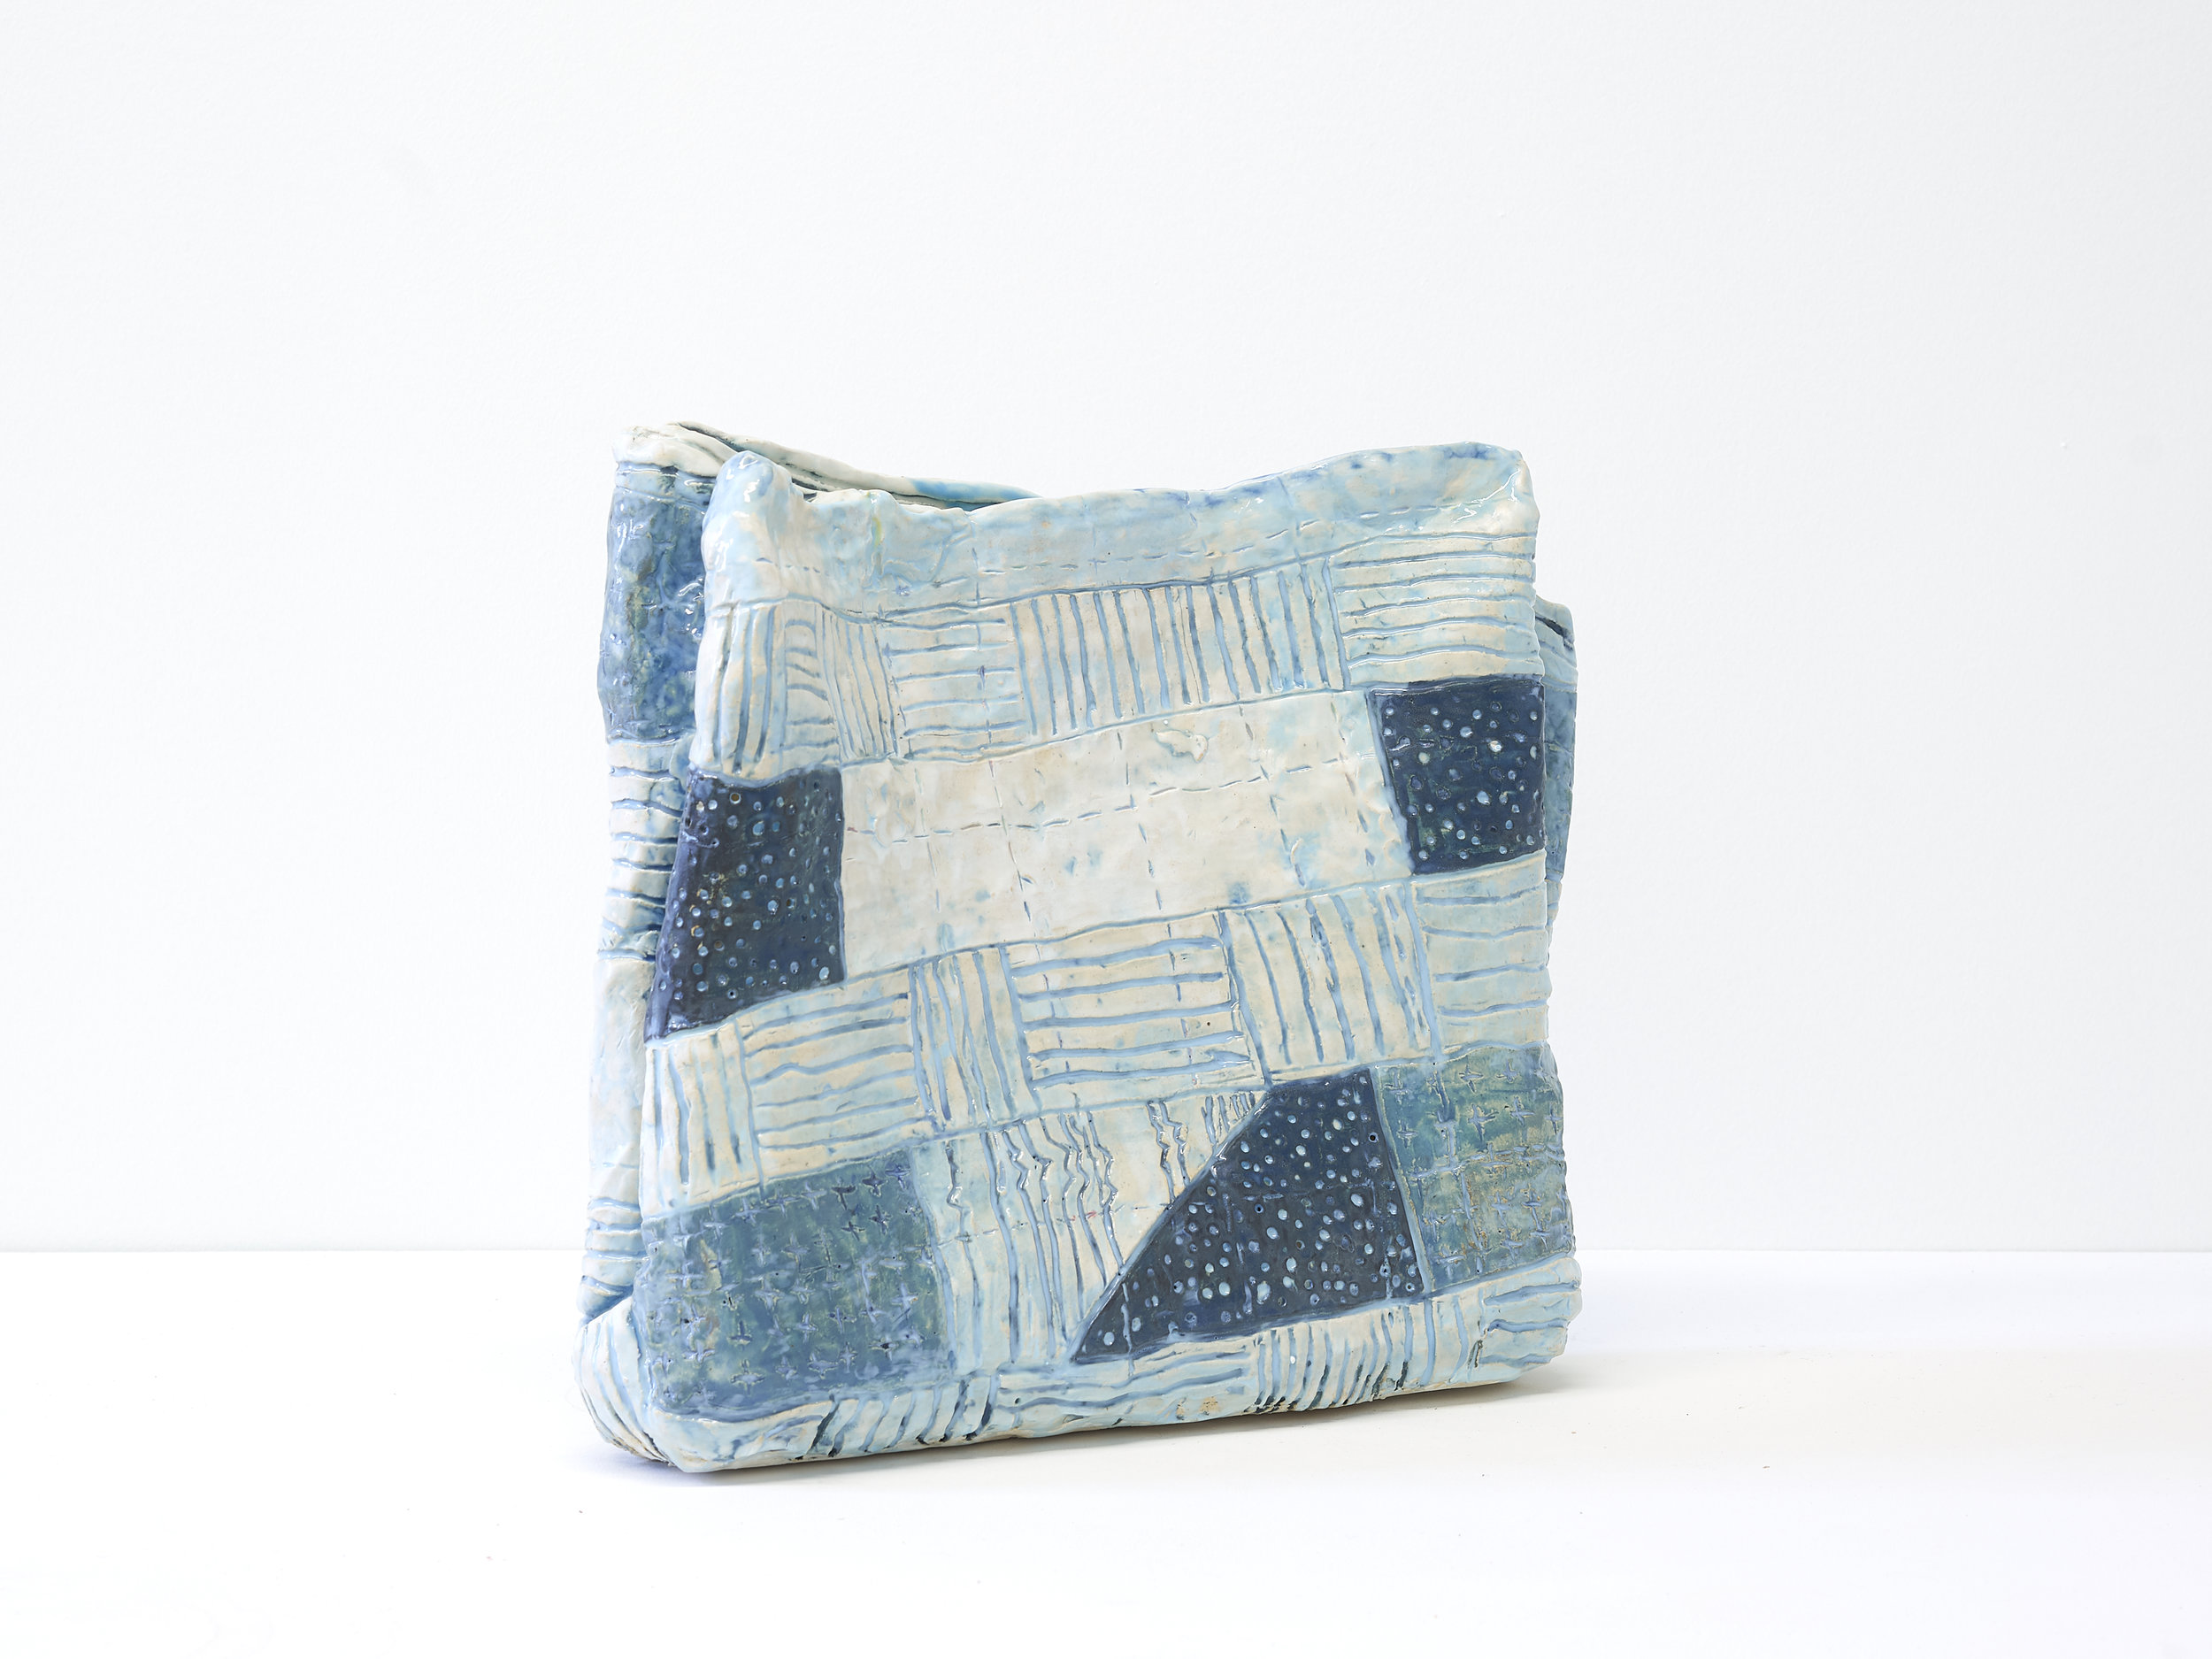   Frances’ Blanket   13” x 14” x 4” / Ceramic / 2018 